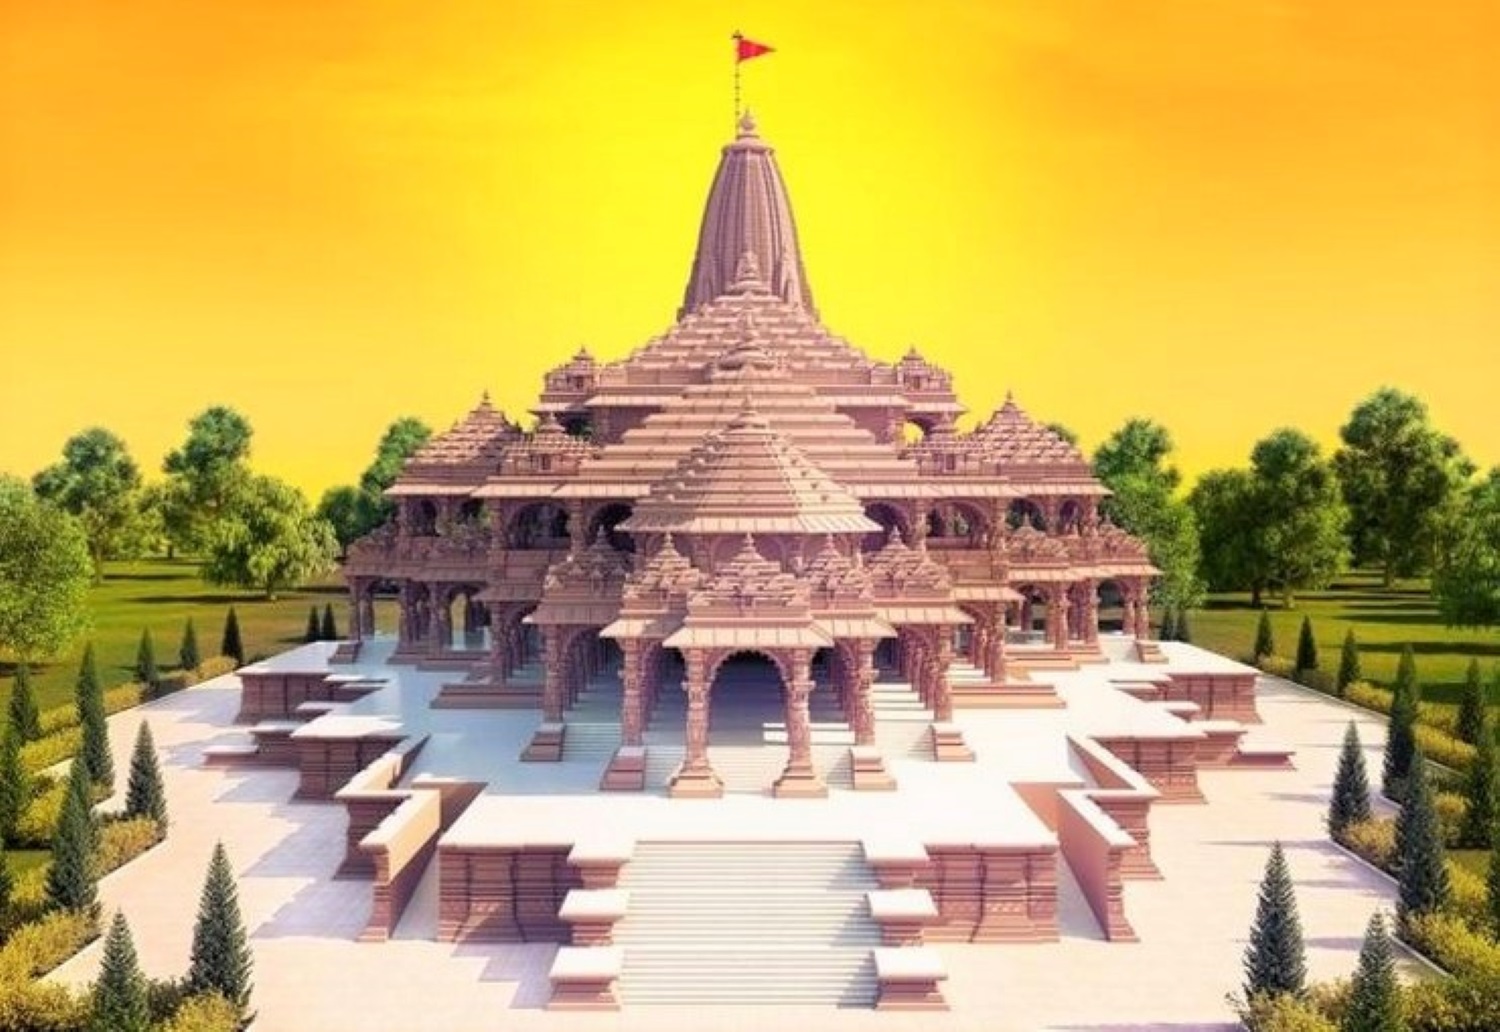 राम मंदिर में 22 जनवरी को विराजेंगे रामलला, PM मोदी को भेजा गया न्योता 